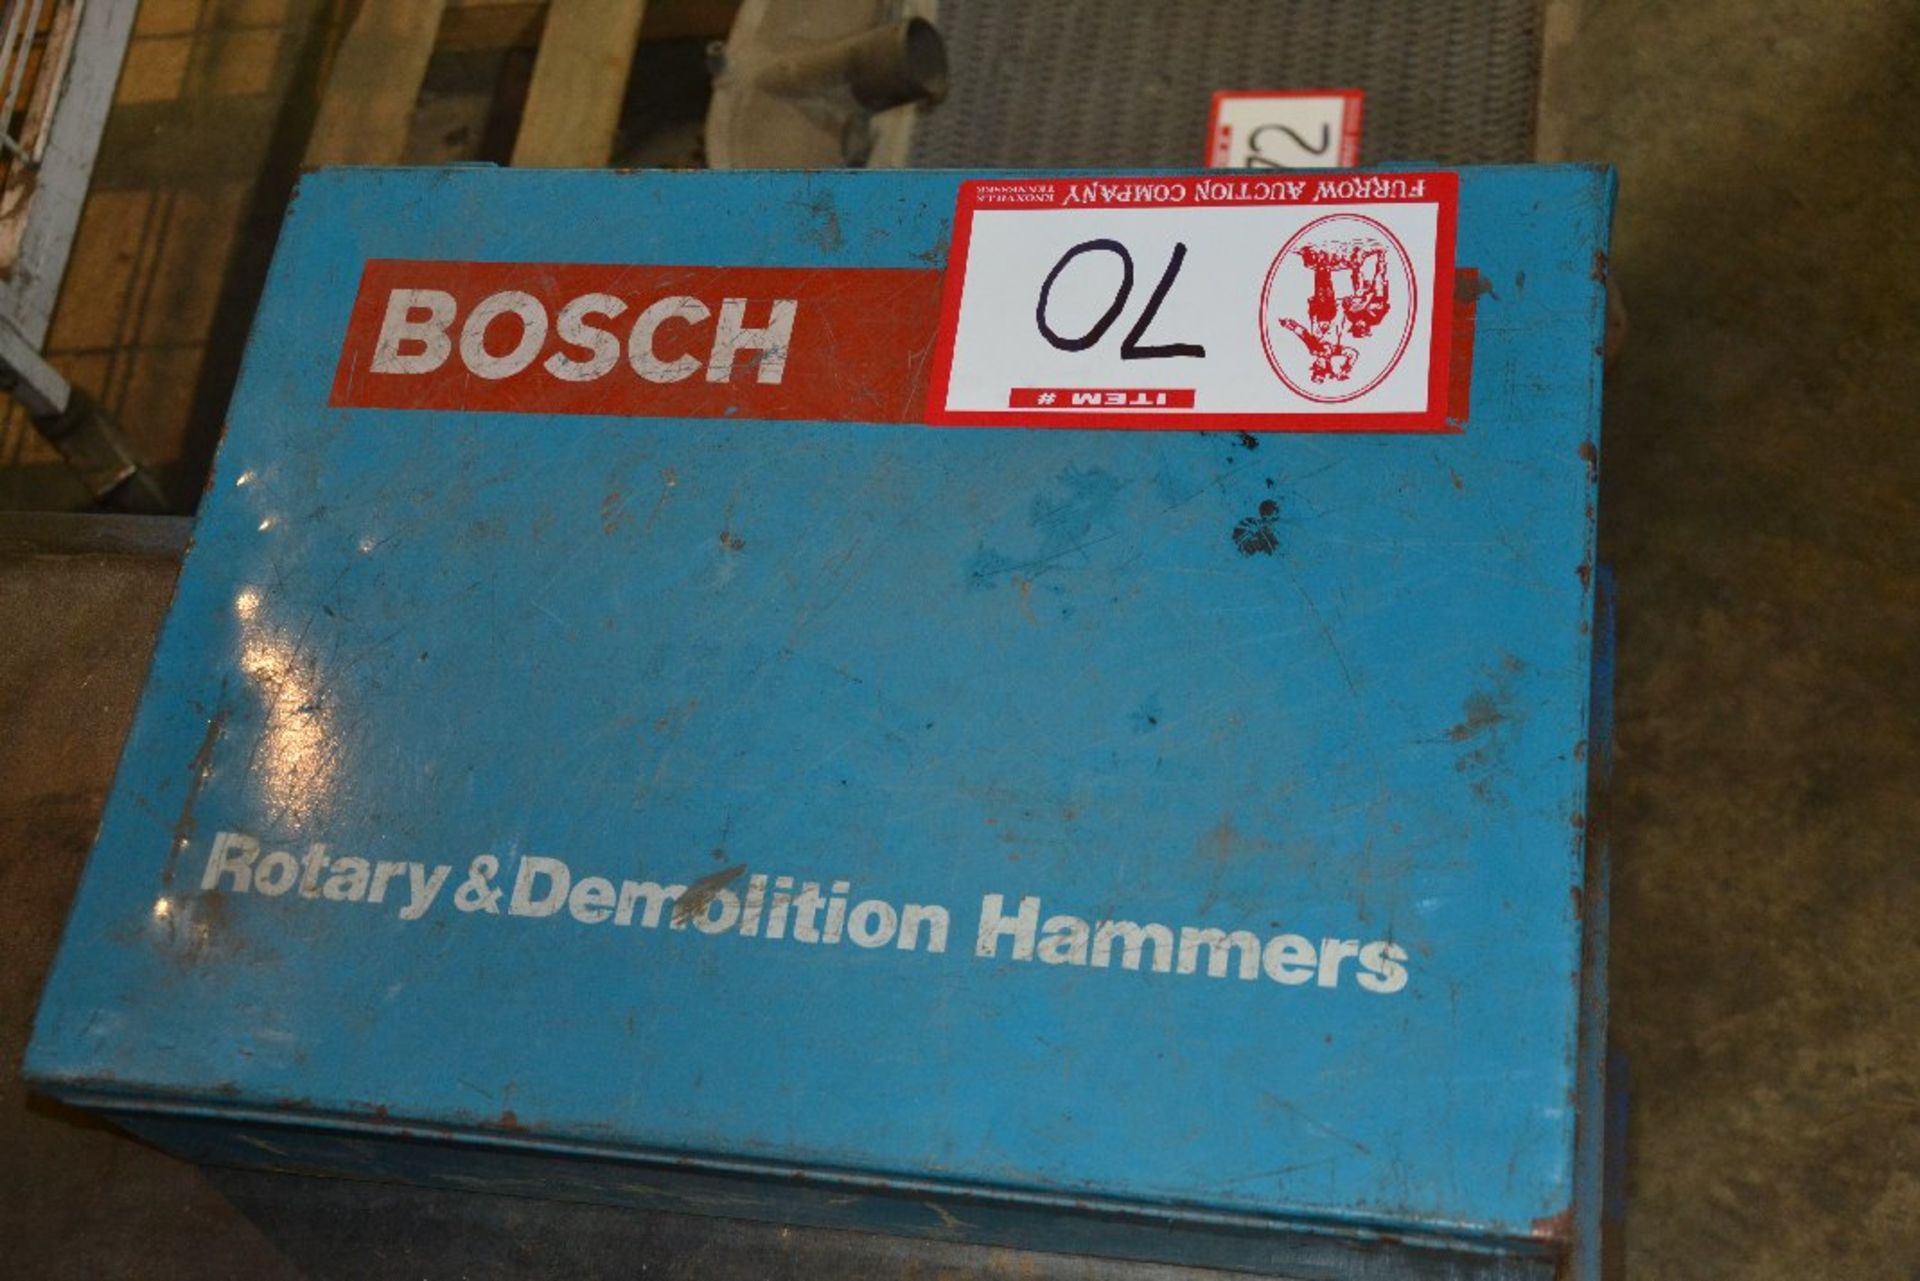 Bosch Rotary Demolition Hammer, Model 11202 - Image 2 of 2